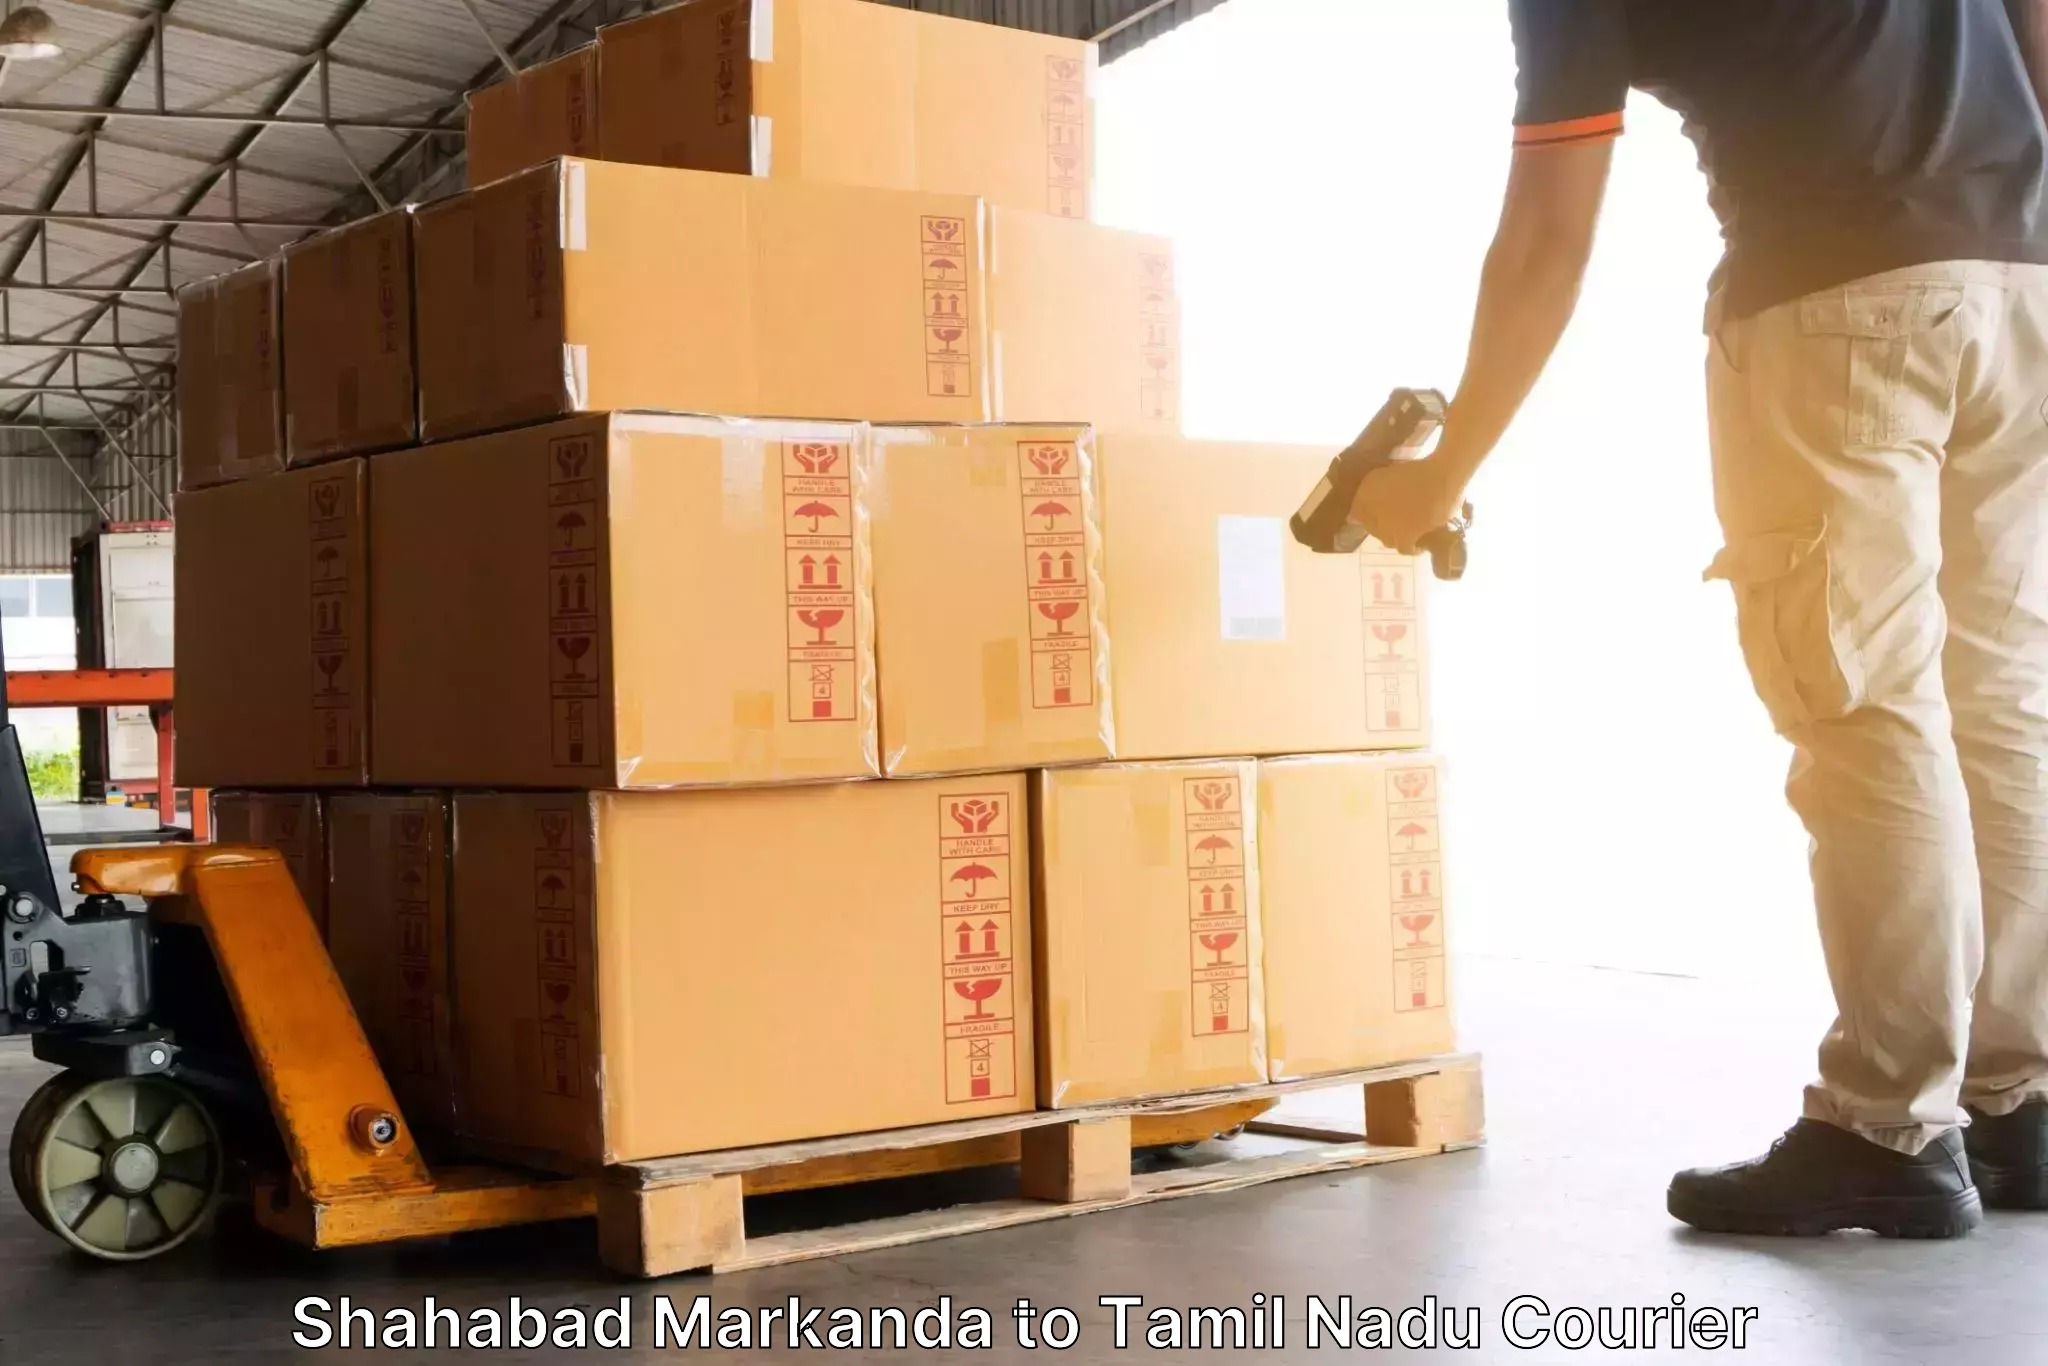 Reliable courier service Shahabad Markanda to Thygarayanagar